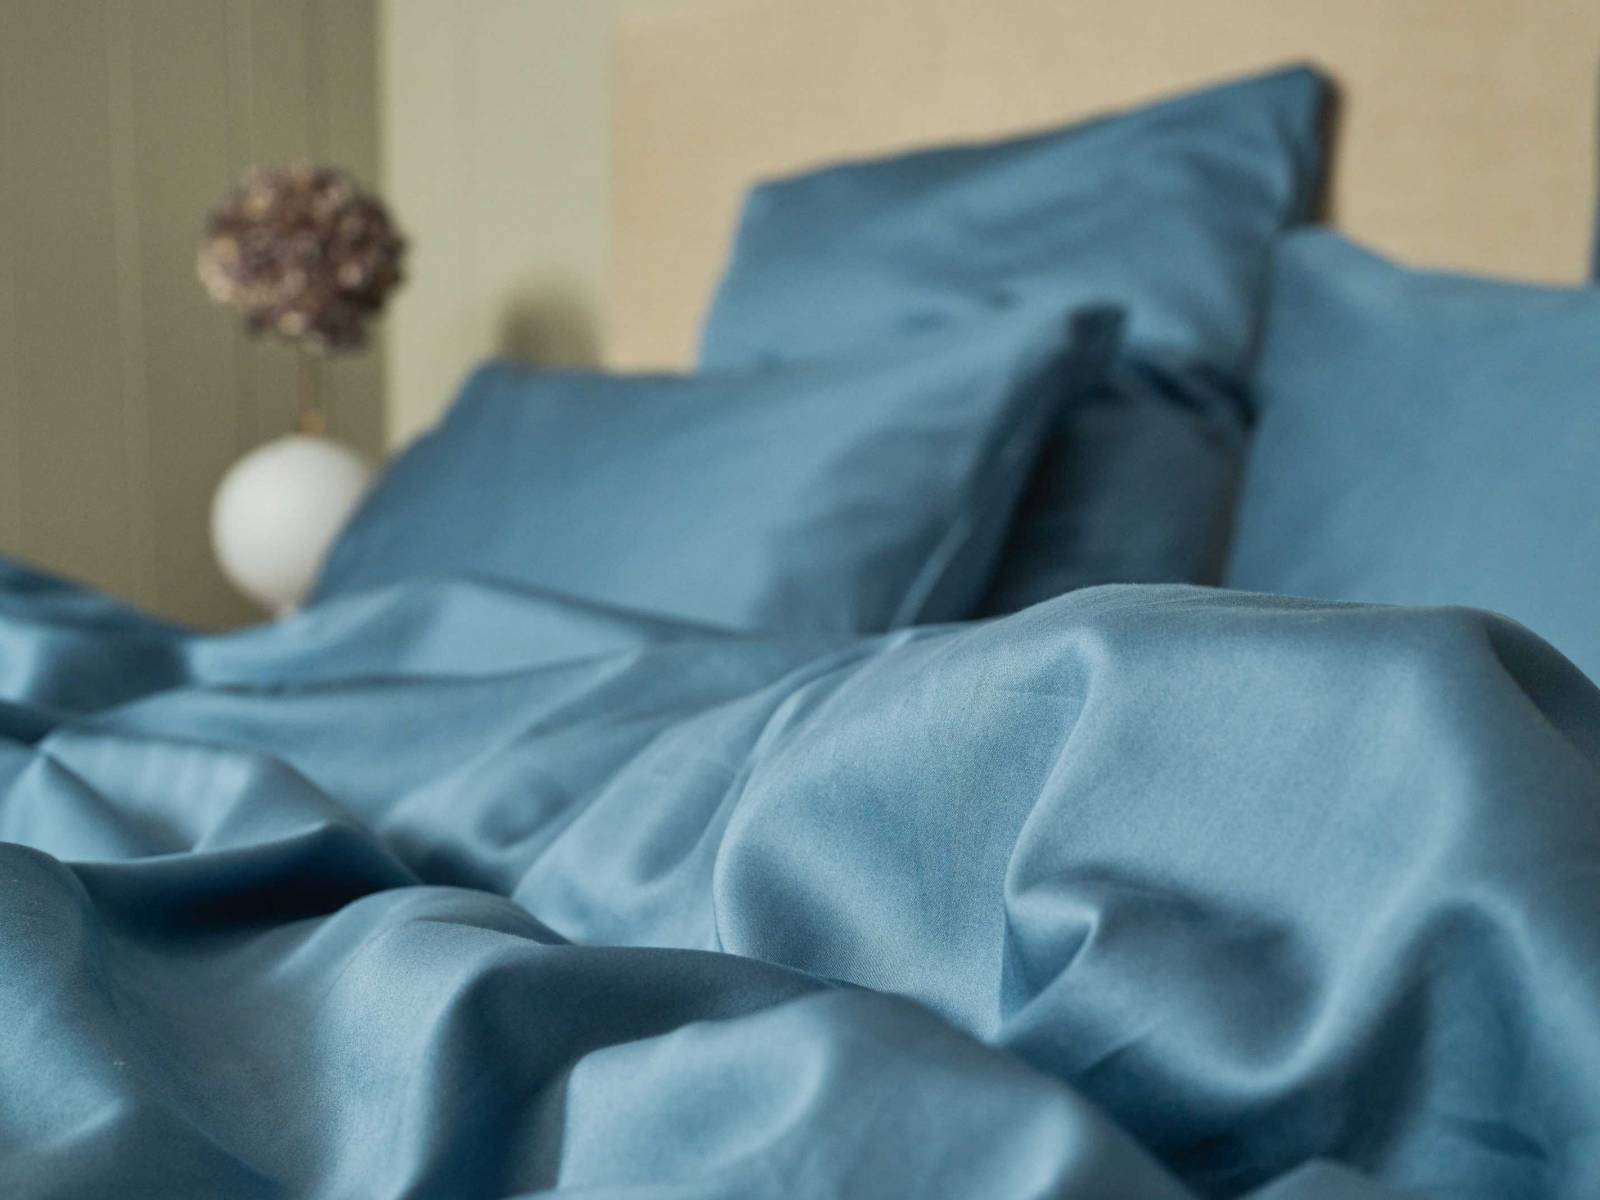 Ob man mit «Braga» in Dusty Blue ein Leben lang das Bett teilen möchte, ist schnell entschieden, denn die nachhaltige und faire Herstellung aus Bio-Baumwolle, die angenehme Haptik und das klassische Design sprechen für sich. JOURNEY LIVING.